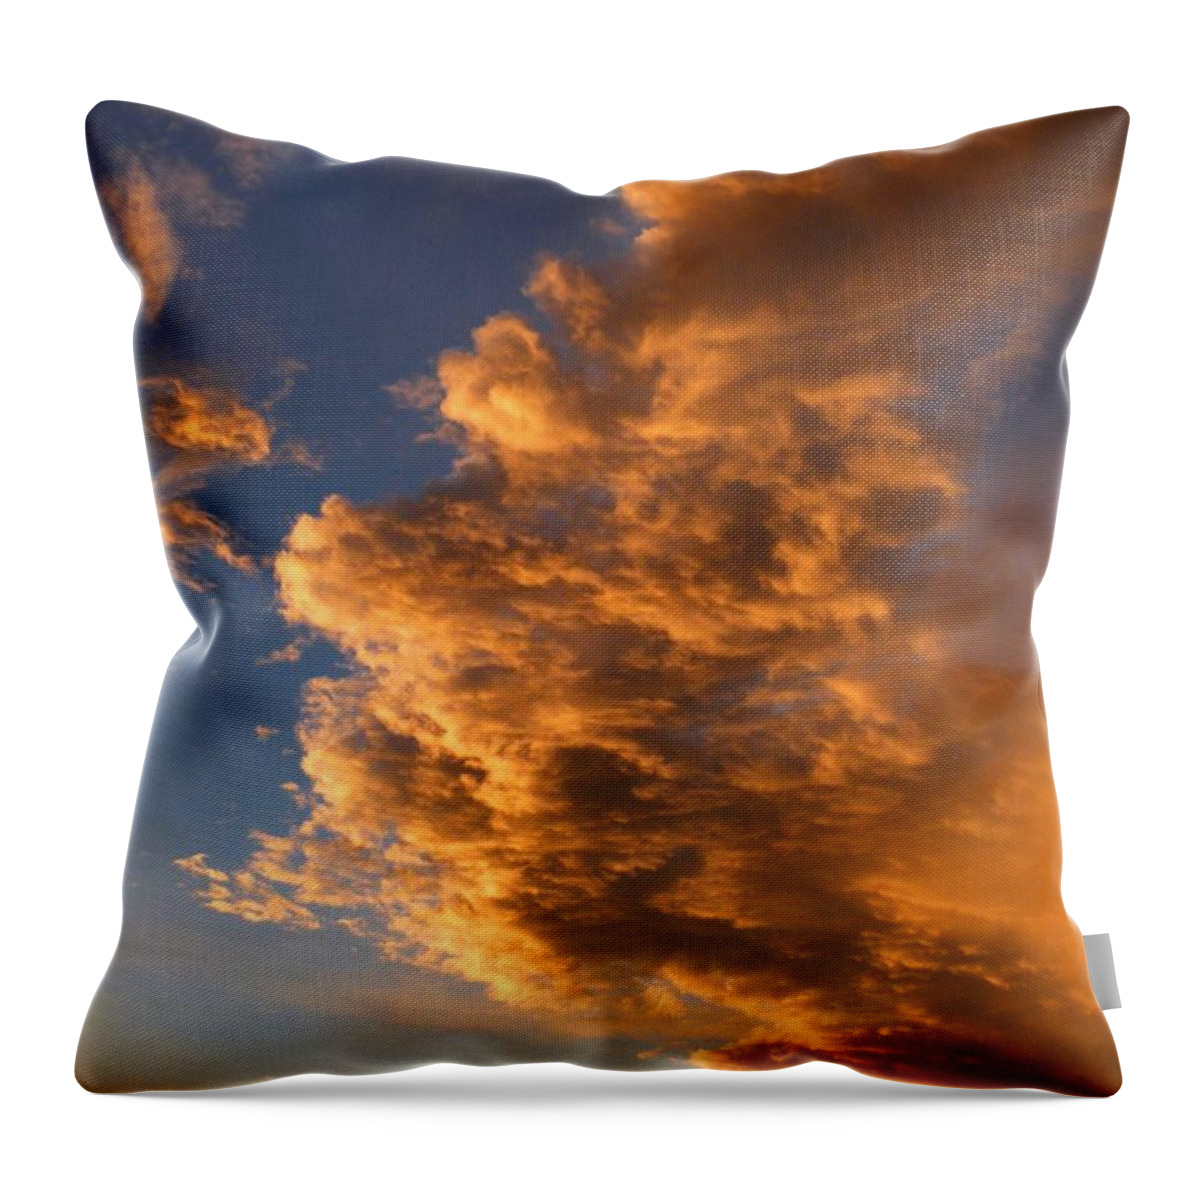 Dramatic Okanagan Sunset Throw Pillow featuring the photograph Dramatic Okanagan Sunset by Will Borden